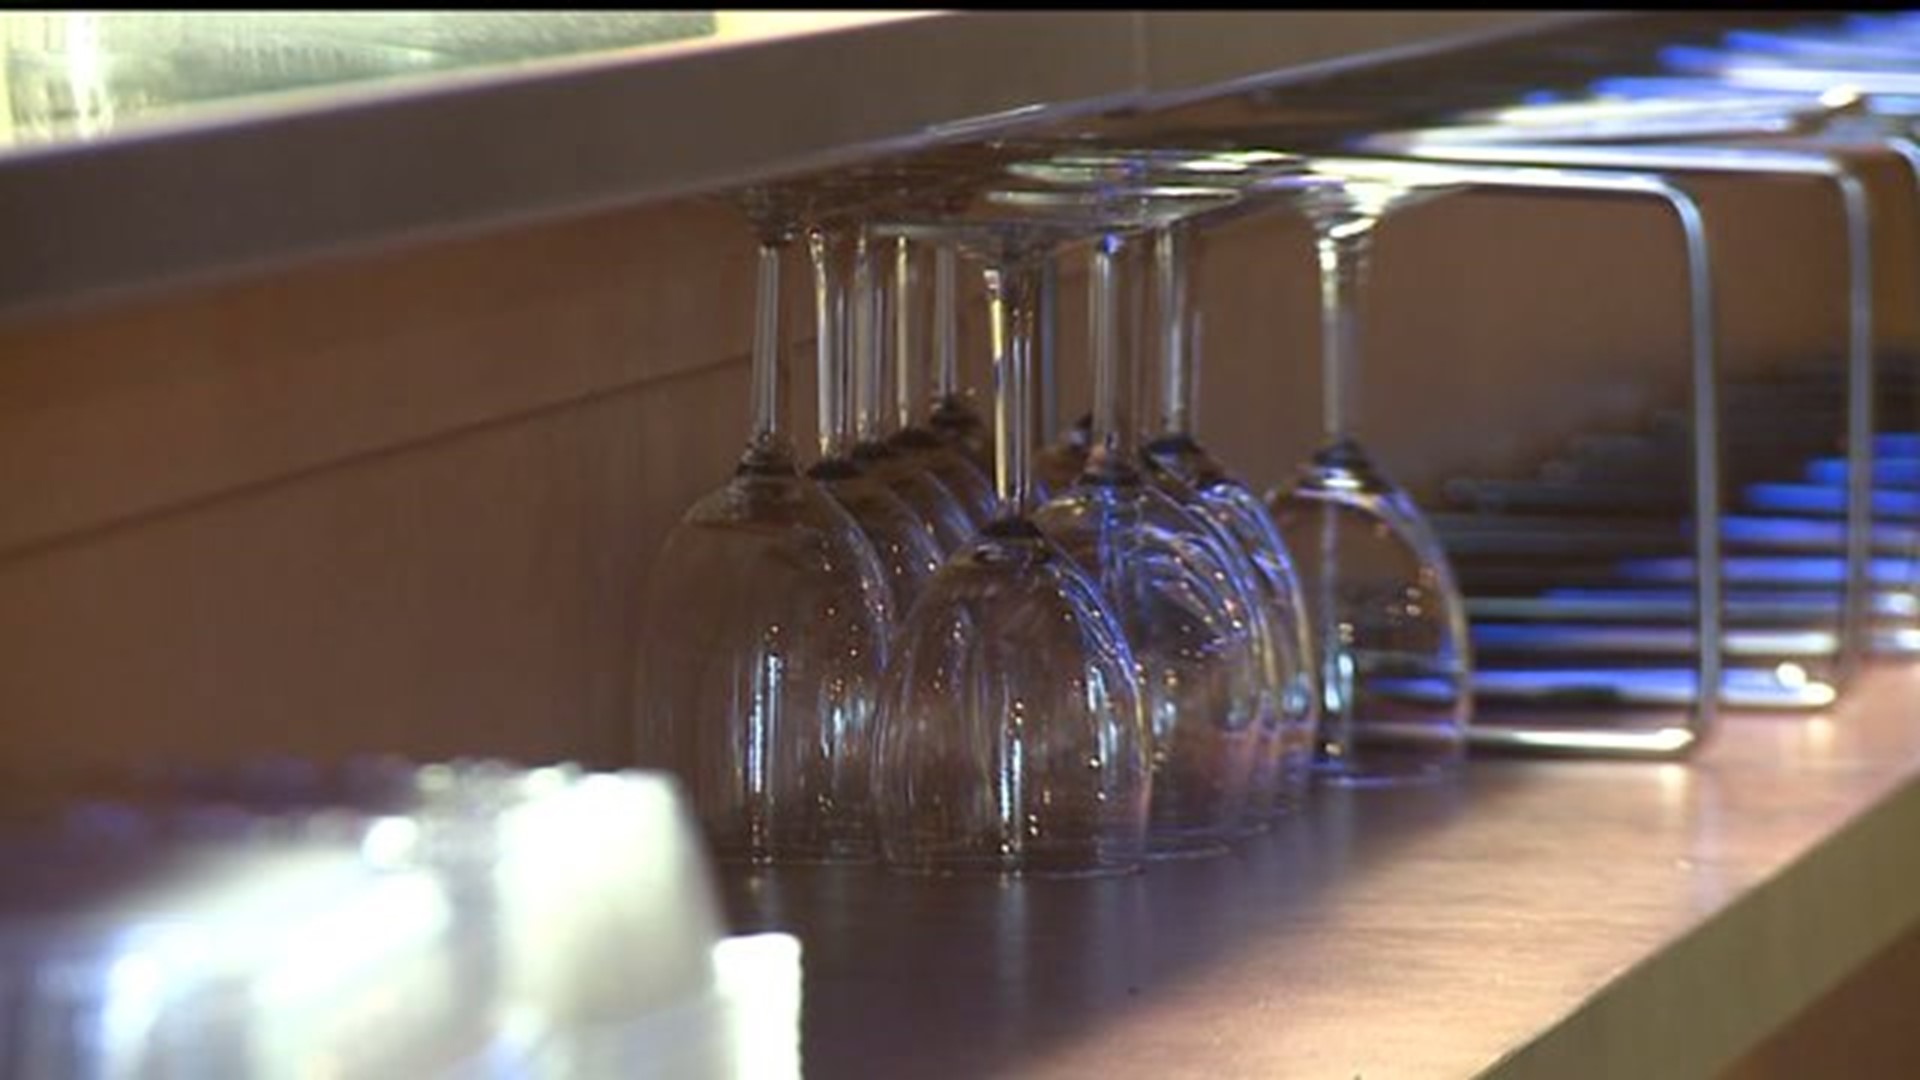 Windsor Township needs signatures to lift alcohol ban